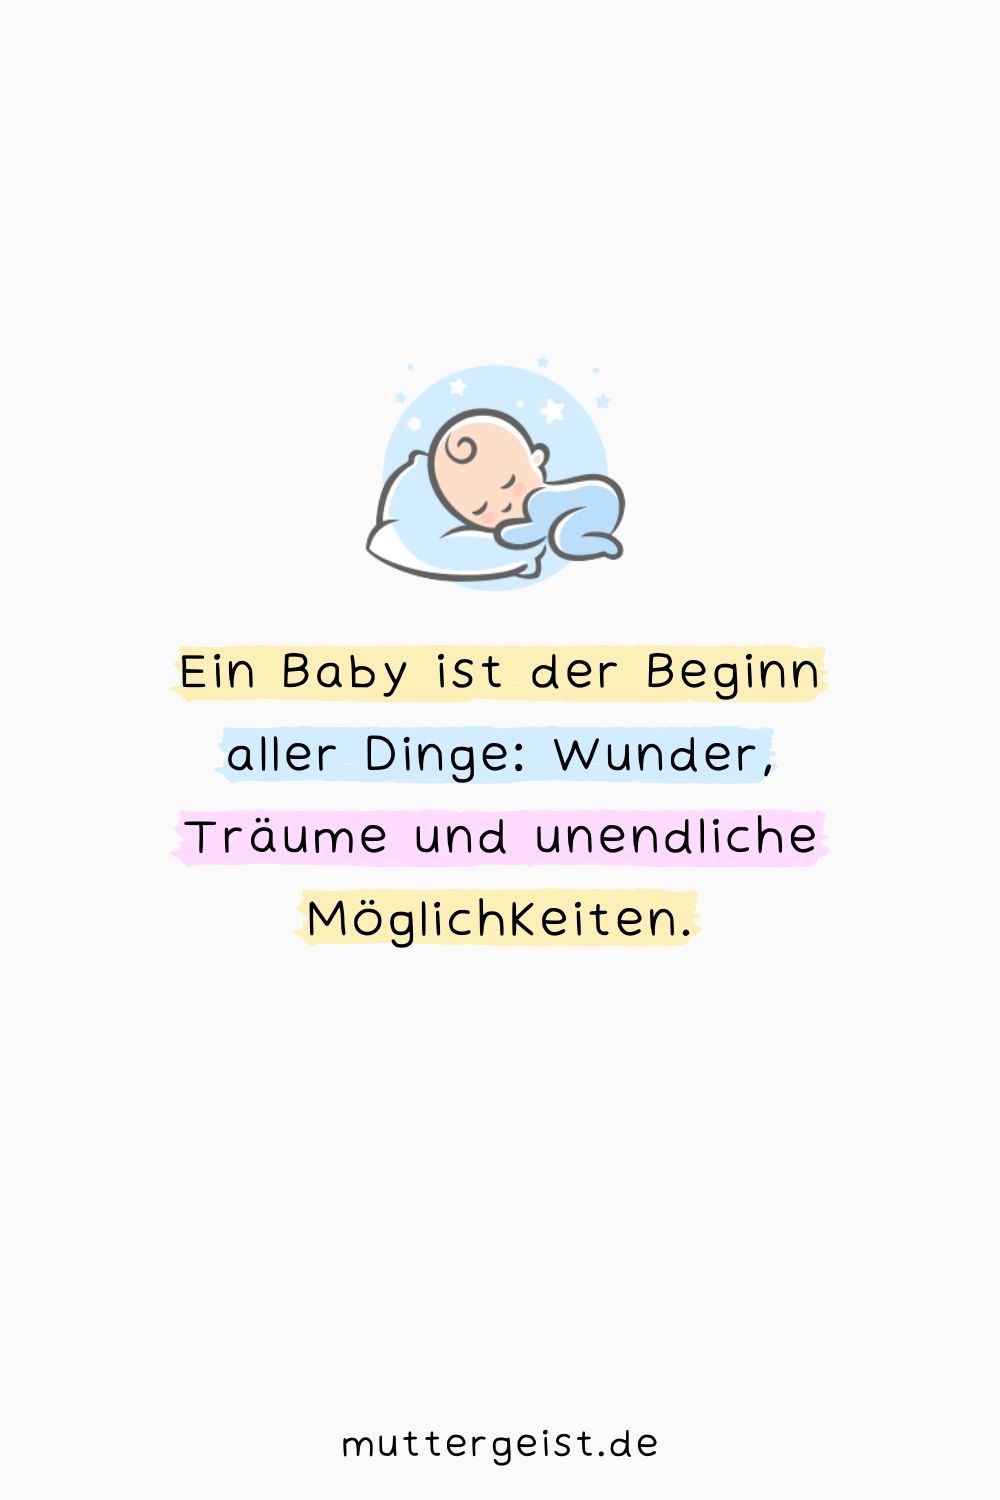 Ein Baby ist der Beginn aller Dinge: Wunder, Träume und unendliche Möglichkeiten.